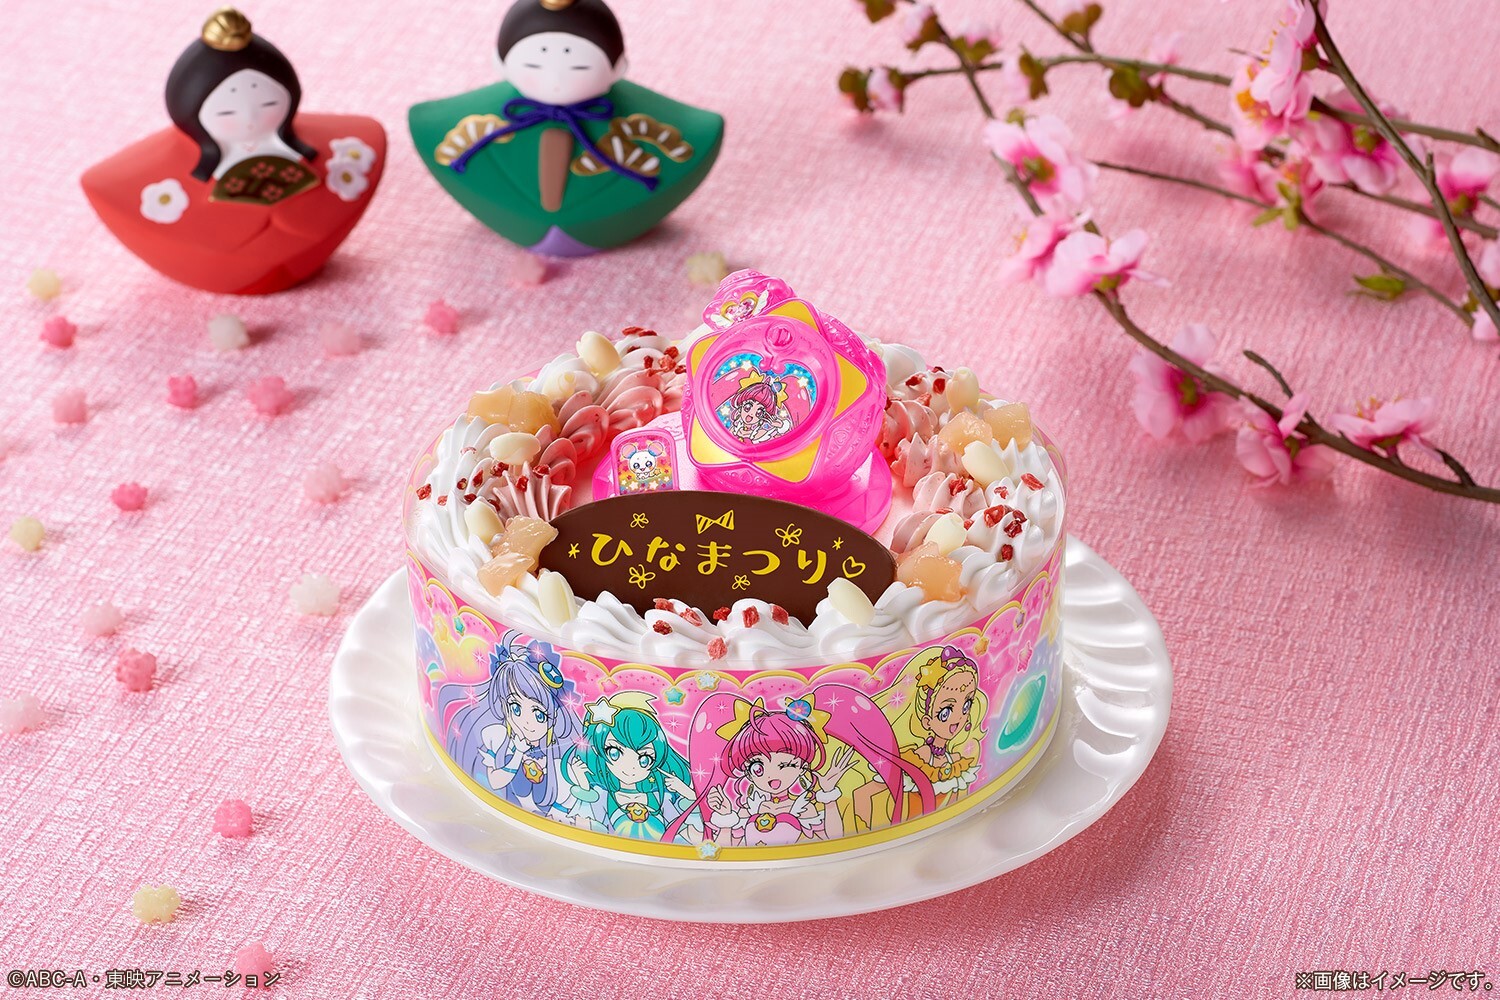 ひなまつりは新プリキュアのキャラデコケーキでお祝い 2月スタート スター トゥインクルプリキュア のケーキ 株式会社バンダイ キャンディ事業部のプレスリリース